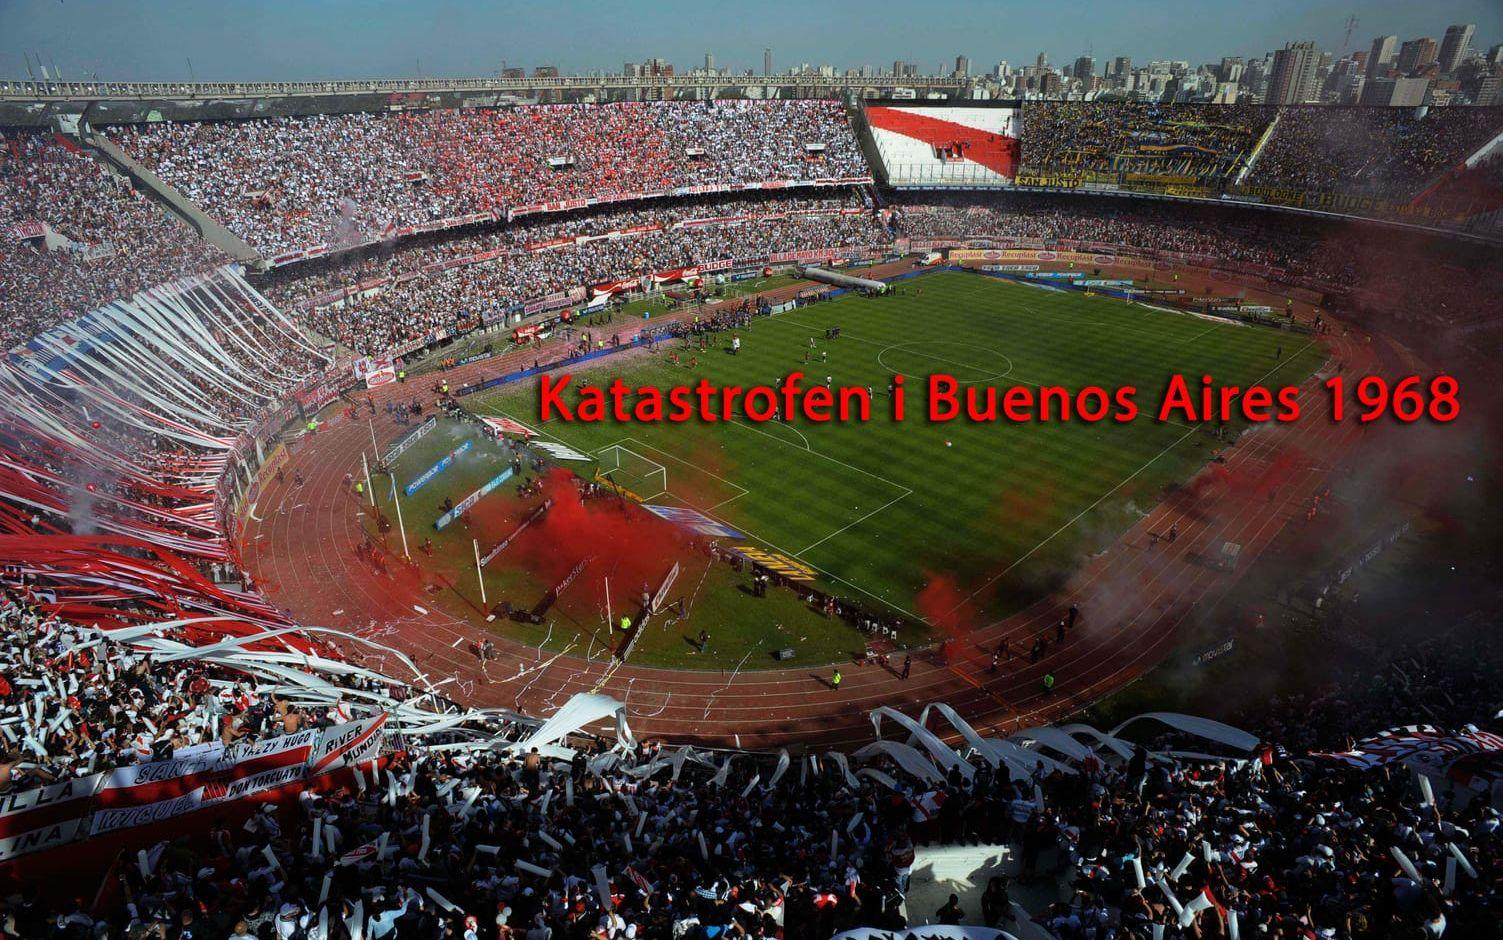 Buenos Aires-derbyt mellan River Plate och Boca Juniors i juni 1968 slutade med en stor katastrof. Foto: TT